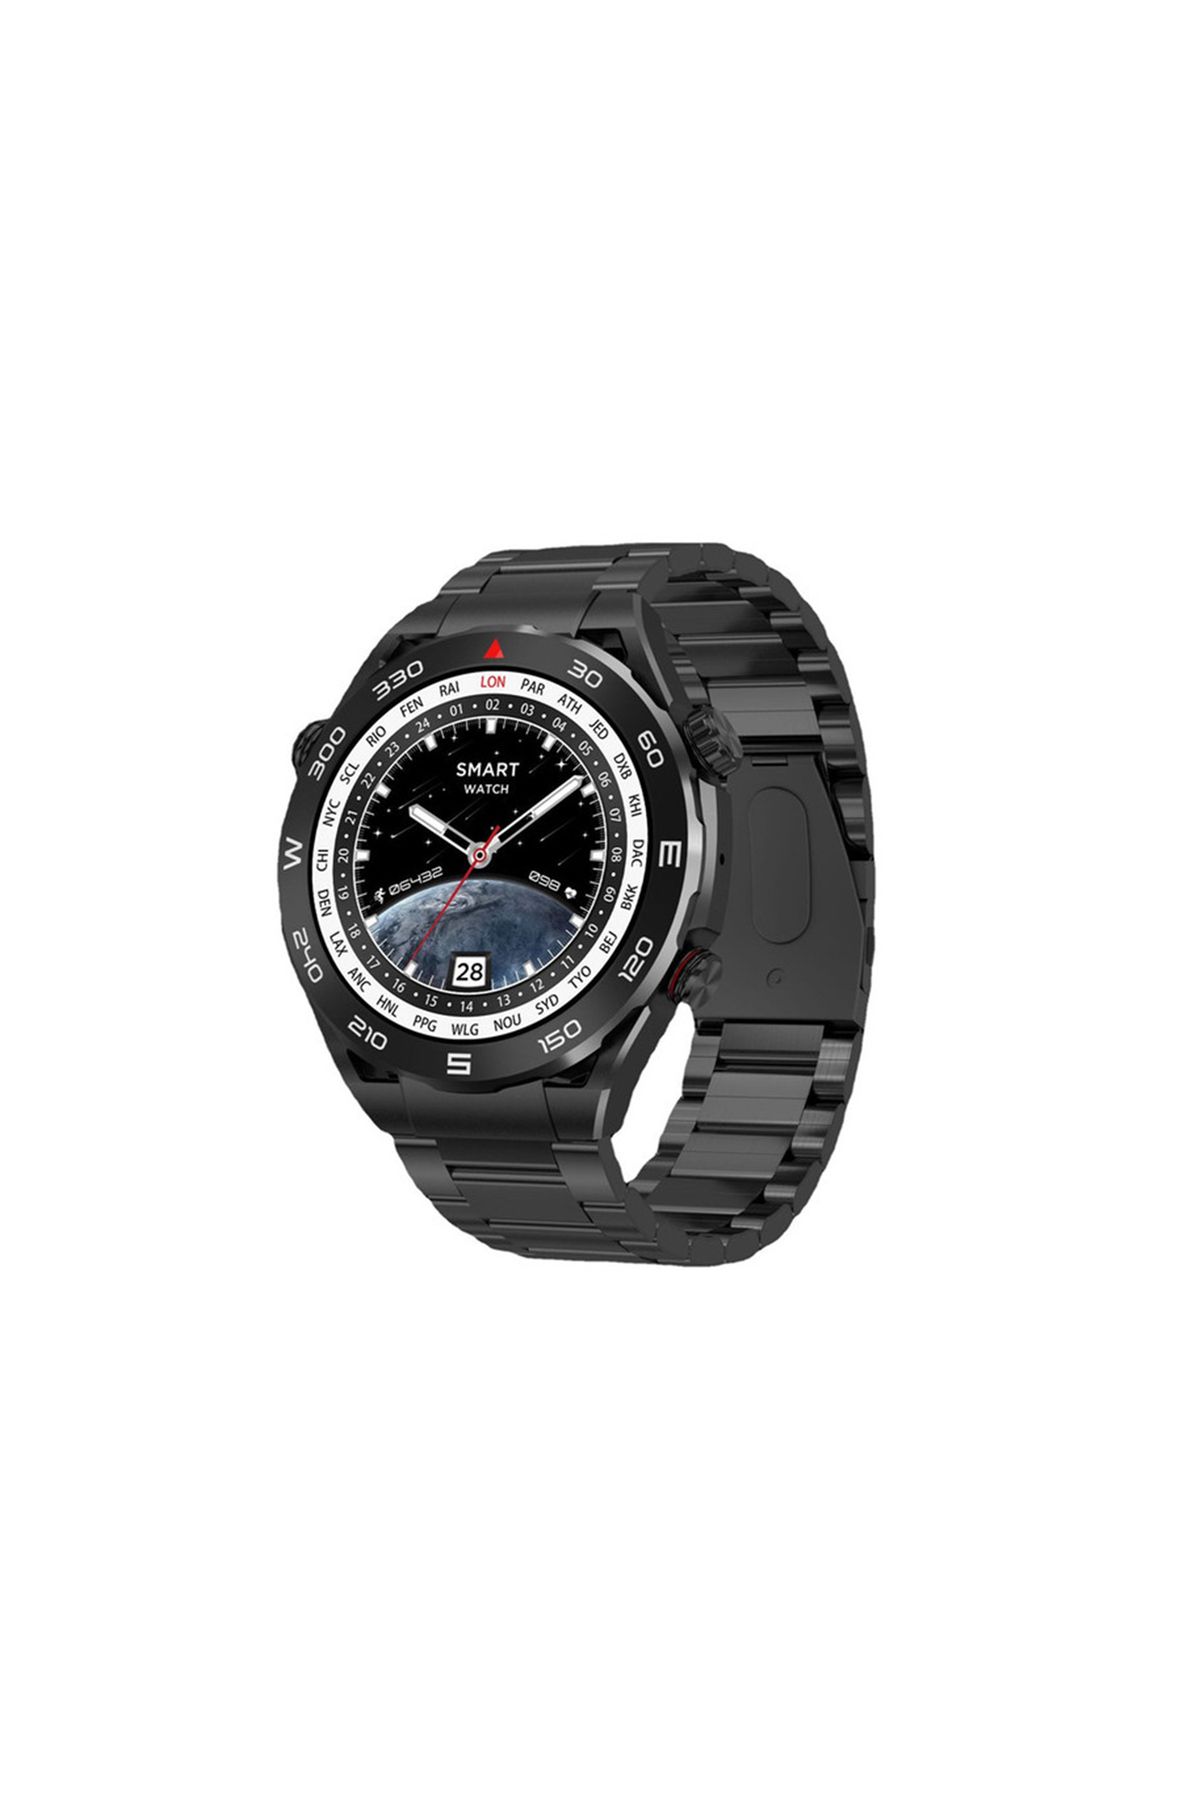 Global 2023 Watch SK4 Ultimate Android İos HarmonyOs Uyumlu Akıllı Saat Siyah WNE0354